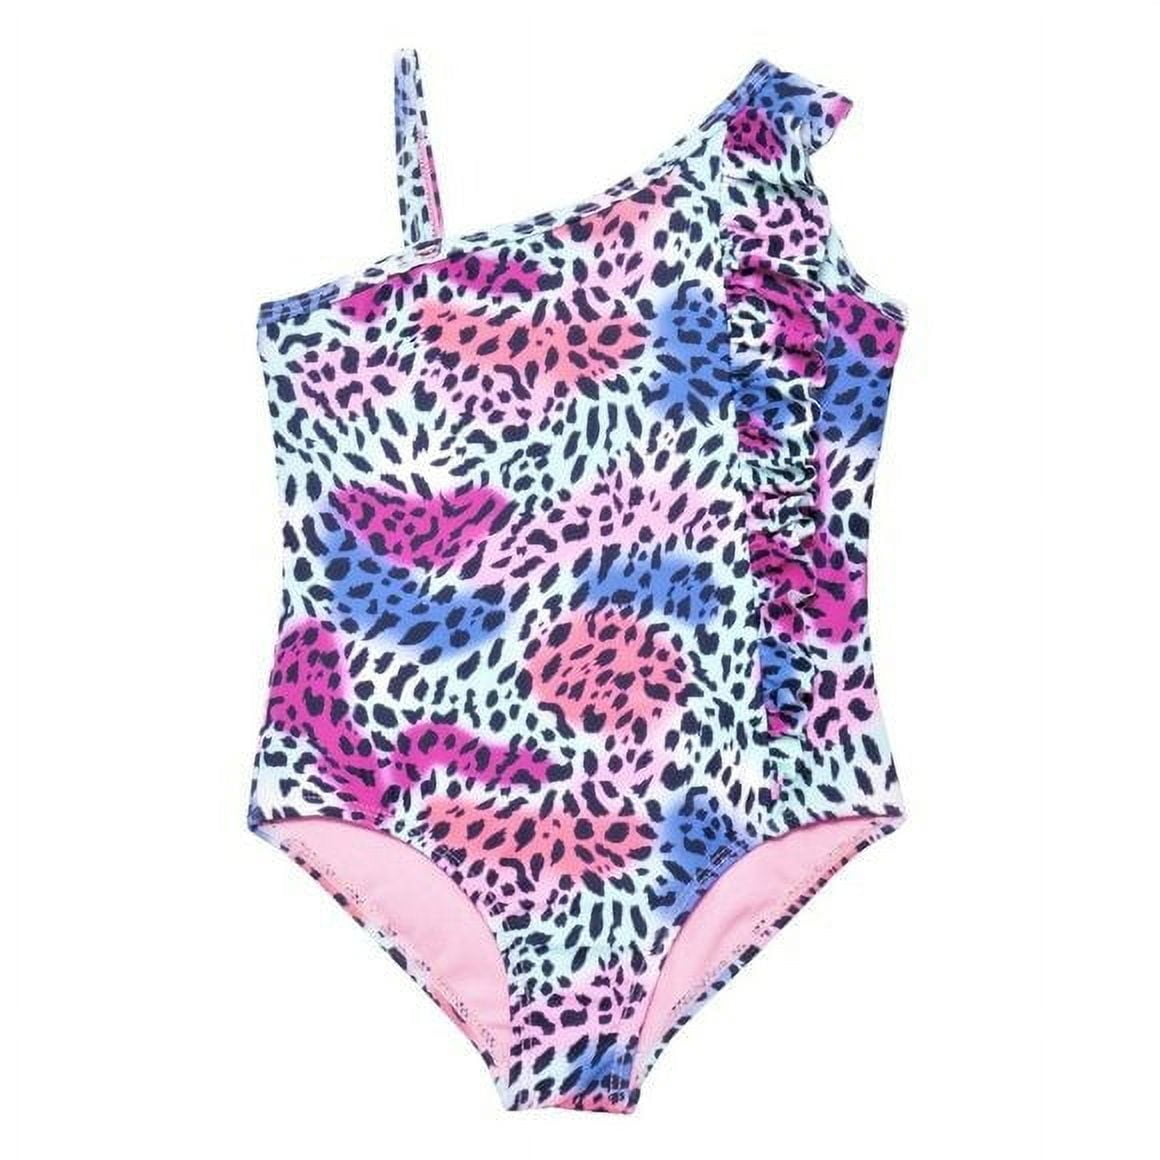 KENSIE GIRL Cheetah Madness Ruffle UPF 50 One-Piece Beach Pool Swimsuit ...